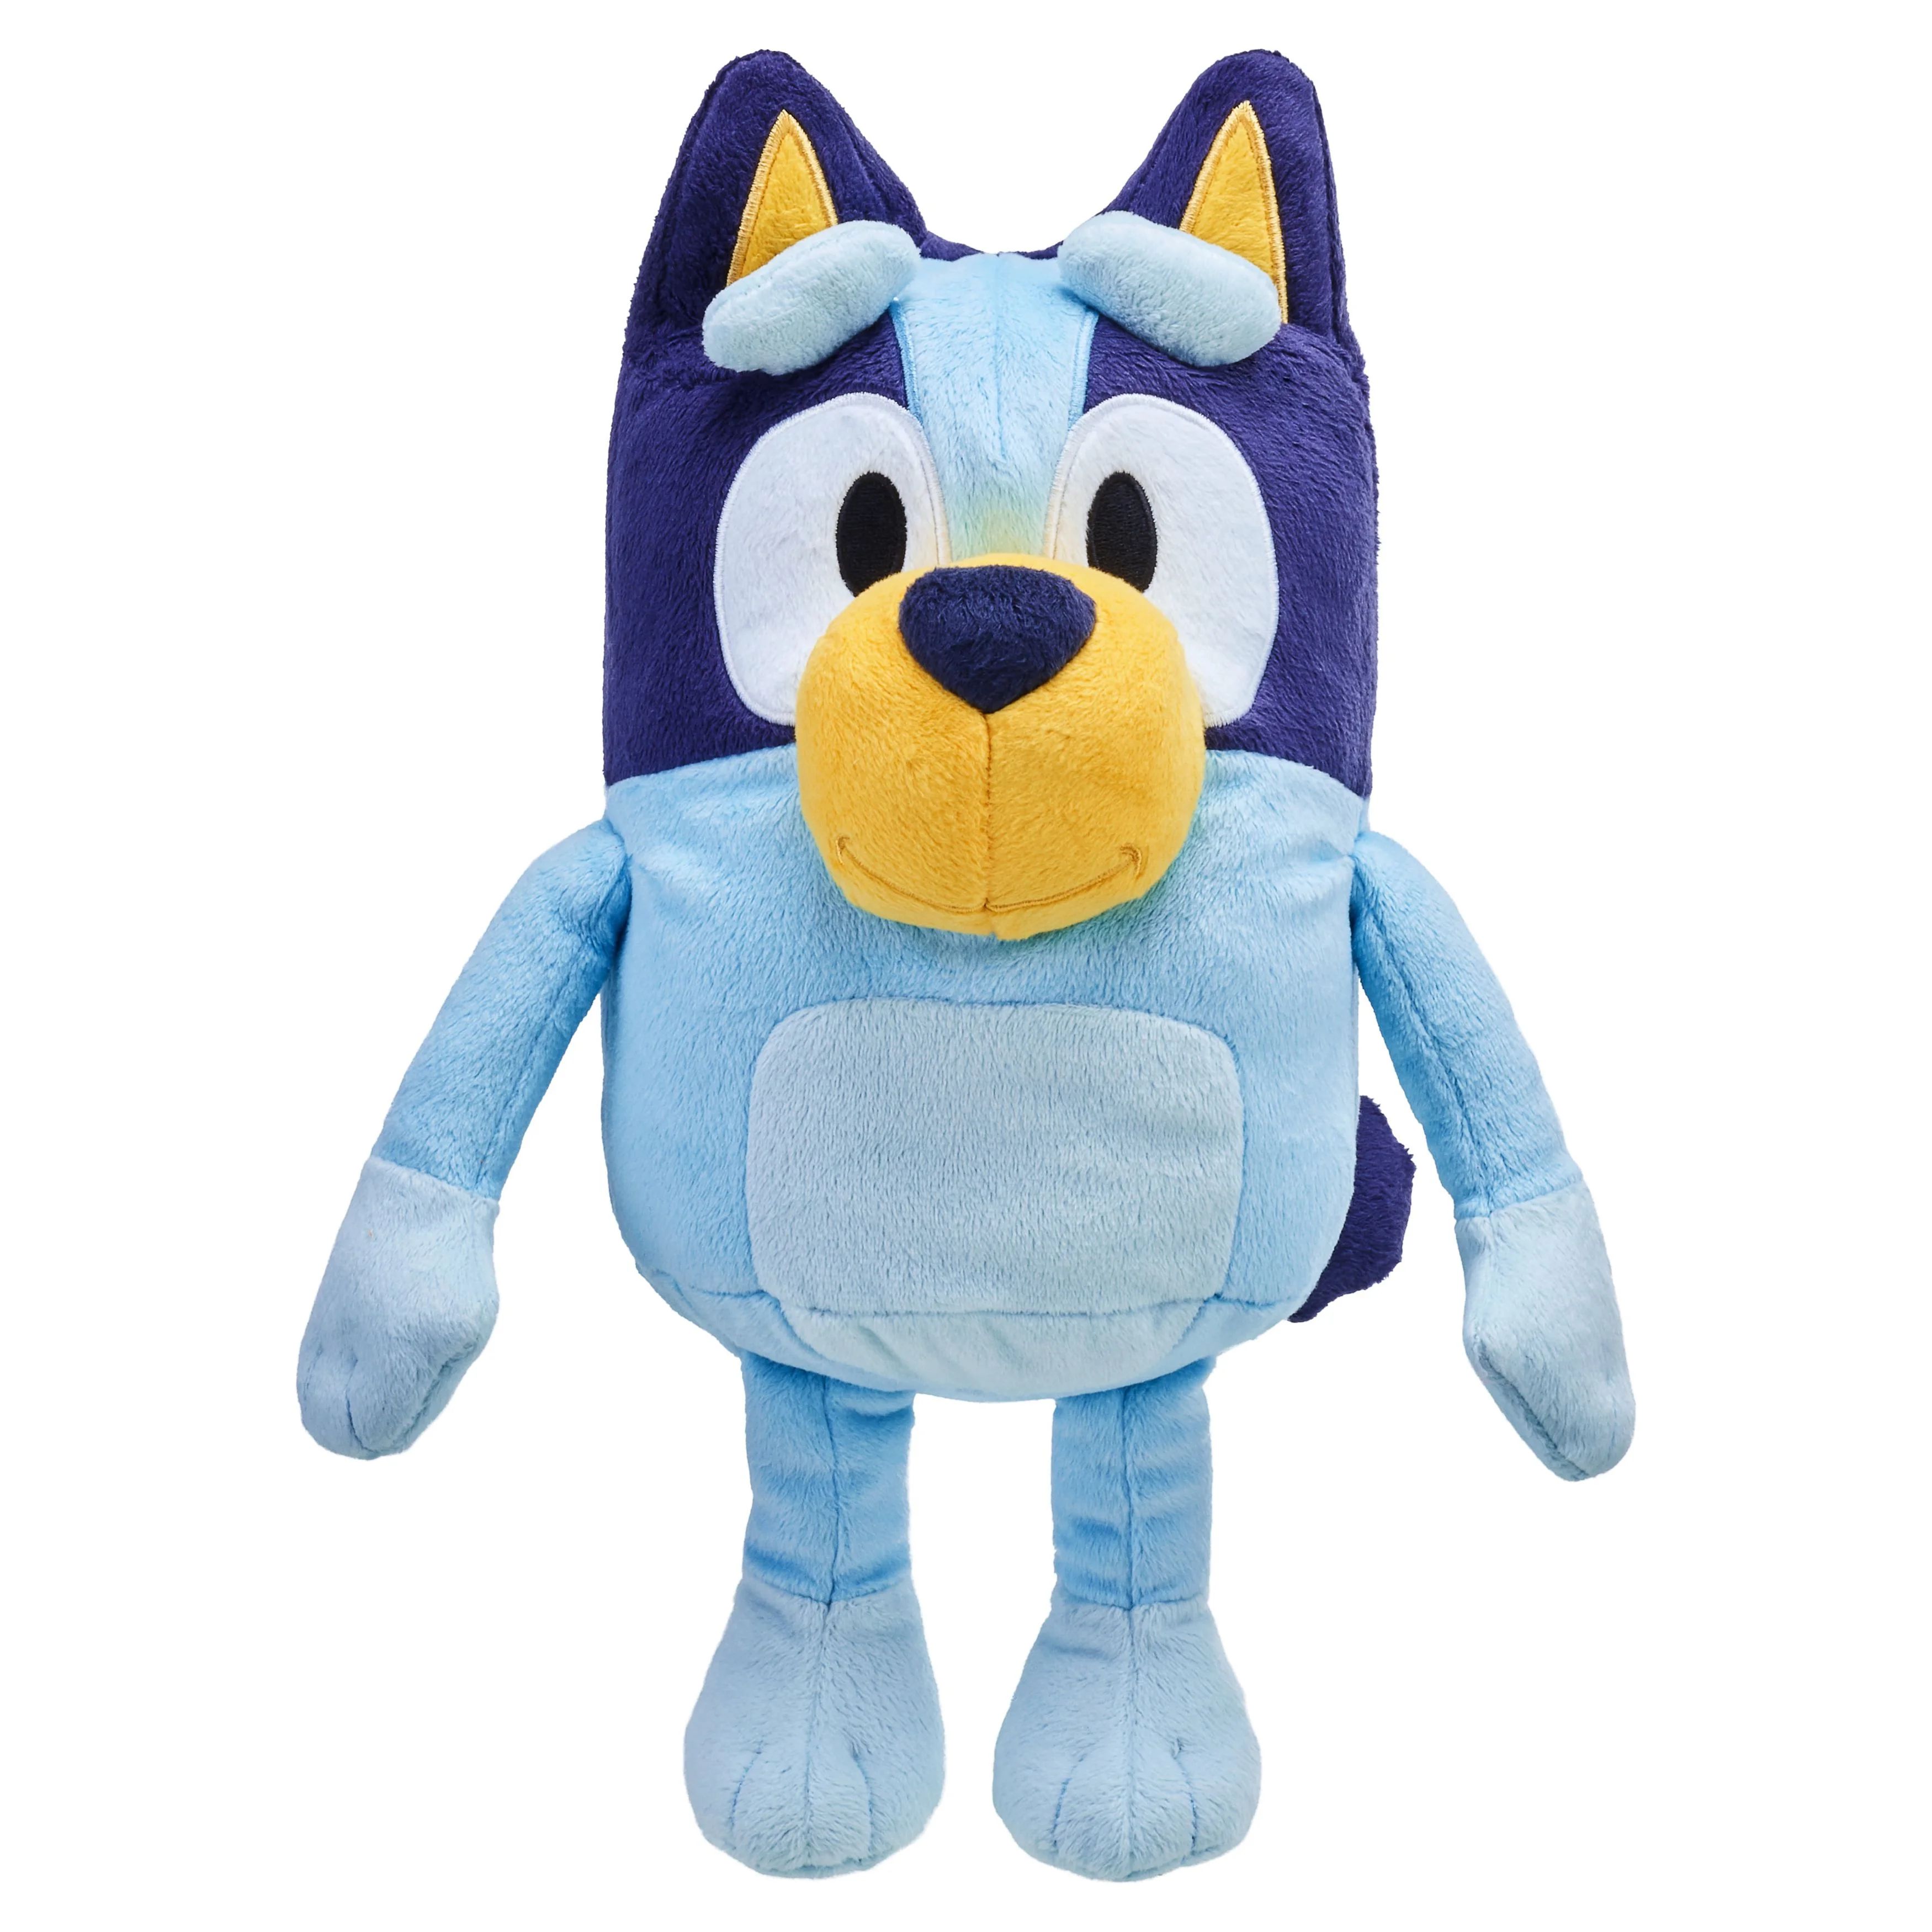 Bluey, Talking Bluey Plush, Toddler Toy | Walmart (US)